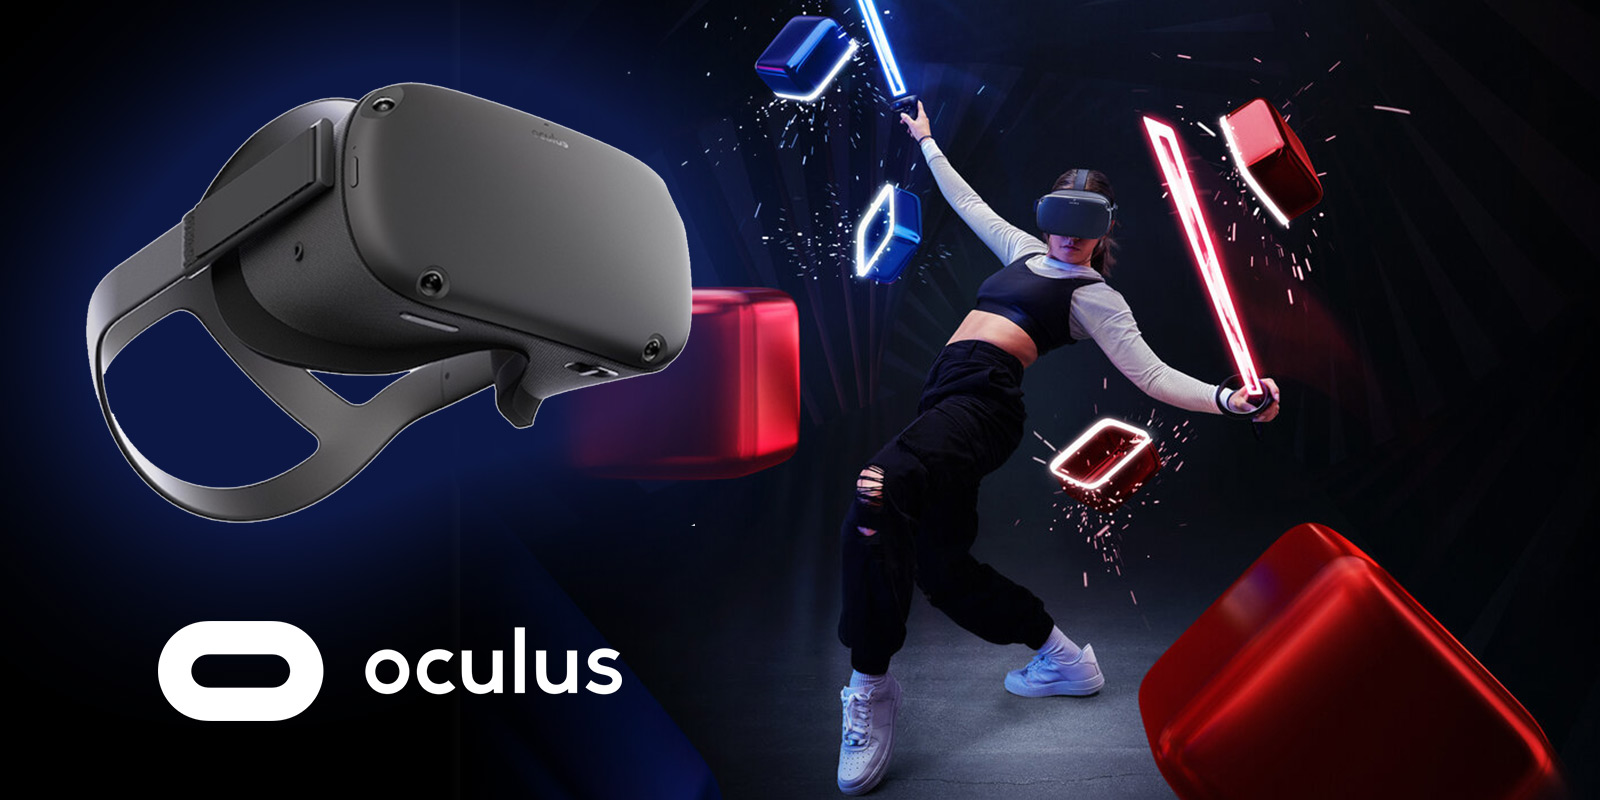 Игры quest 3 vr. ВР очки Oculus 2. ВР шлем Oculus Quest 2. Виртуальная реальность Oculus Quest 2. VR очки Oculus Quest 3.